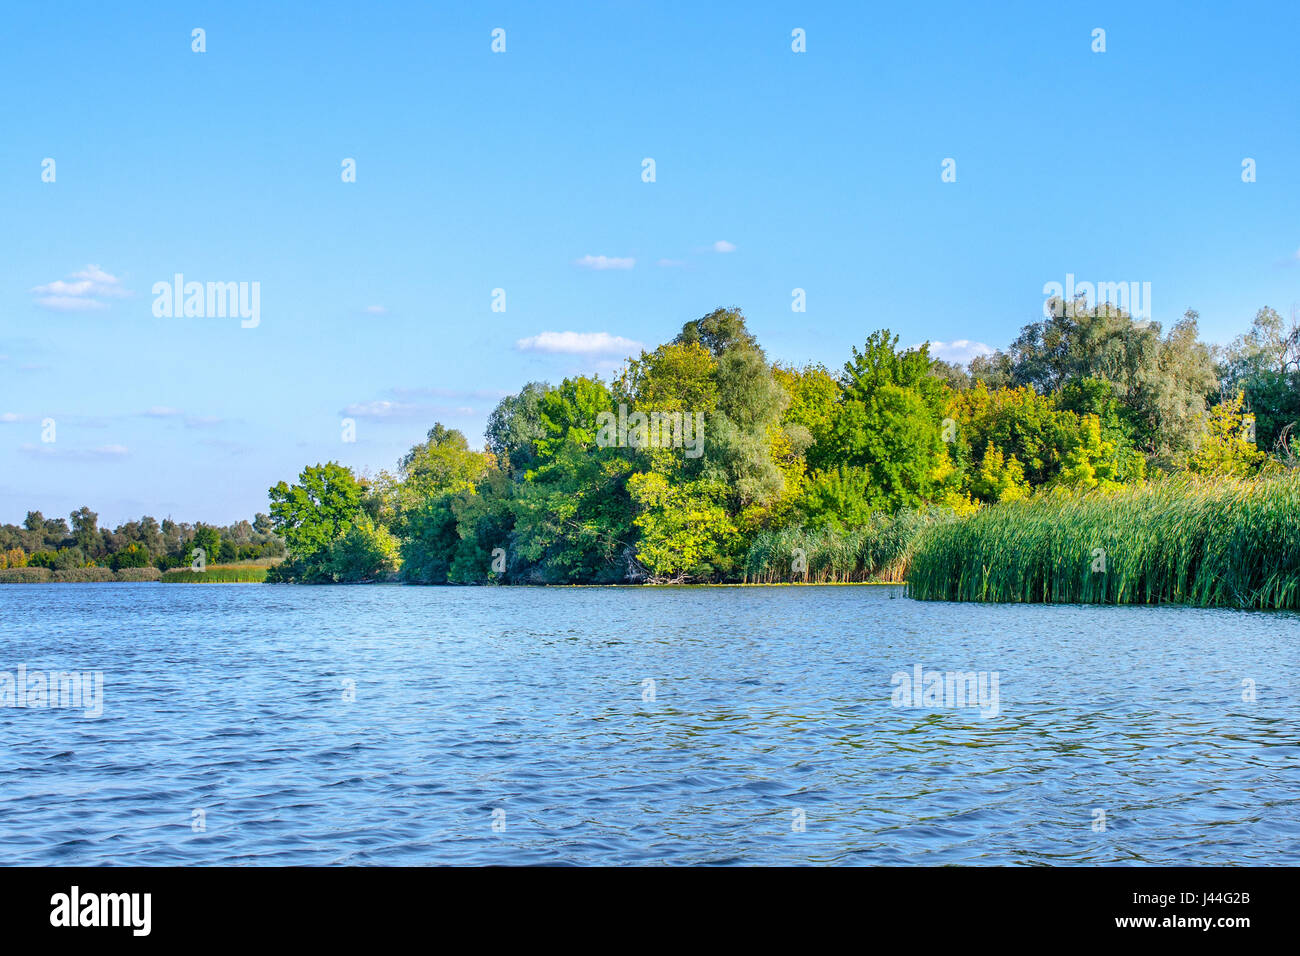 Une image paysage d'un grand fleuve vegetationr Banque D'Images